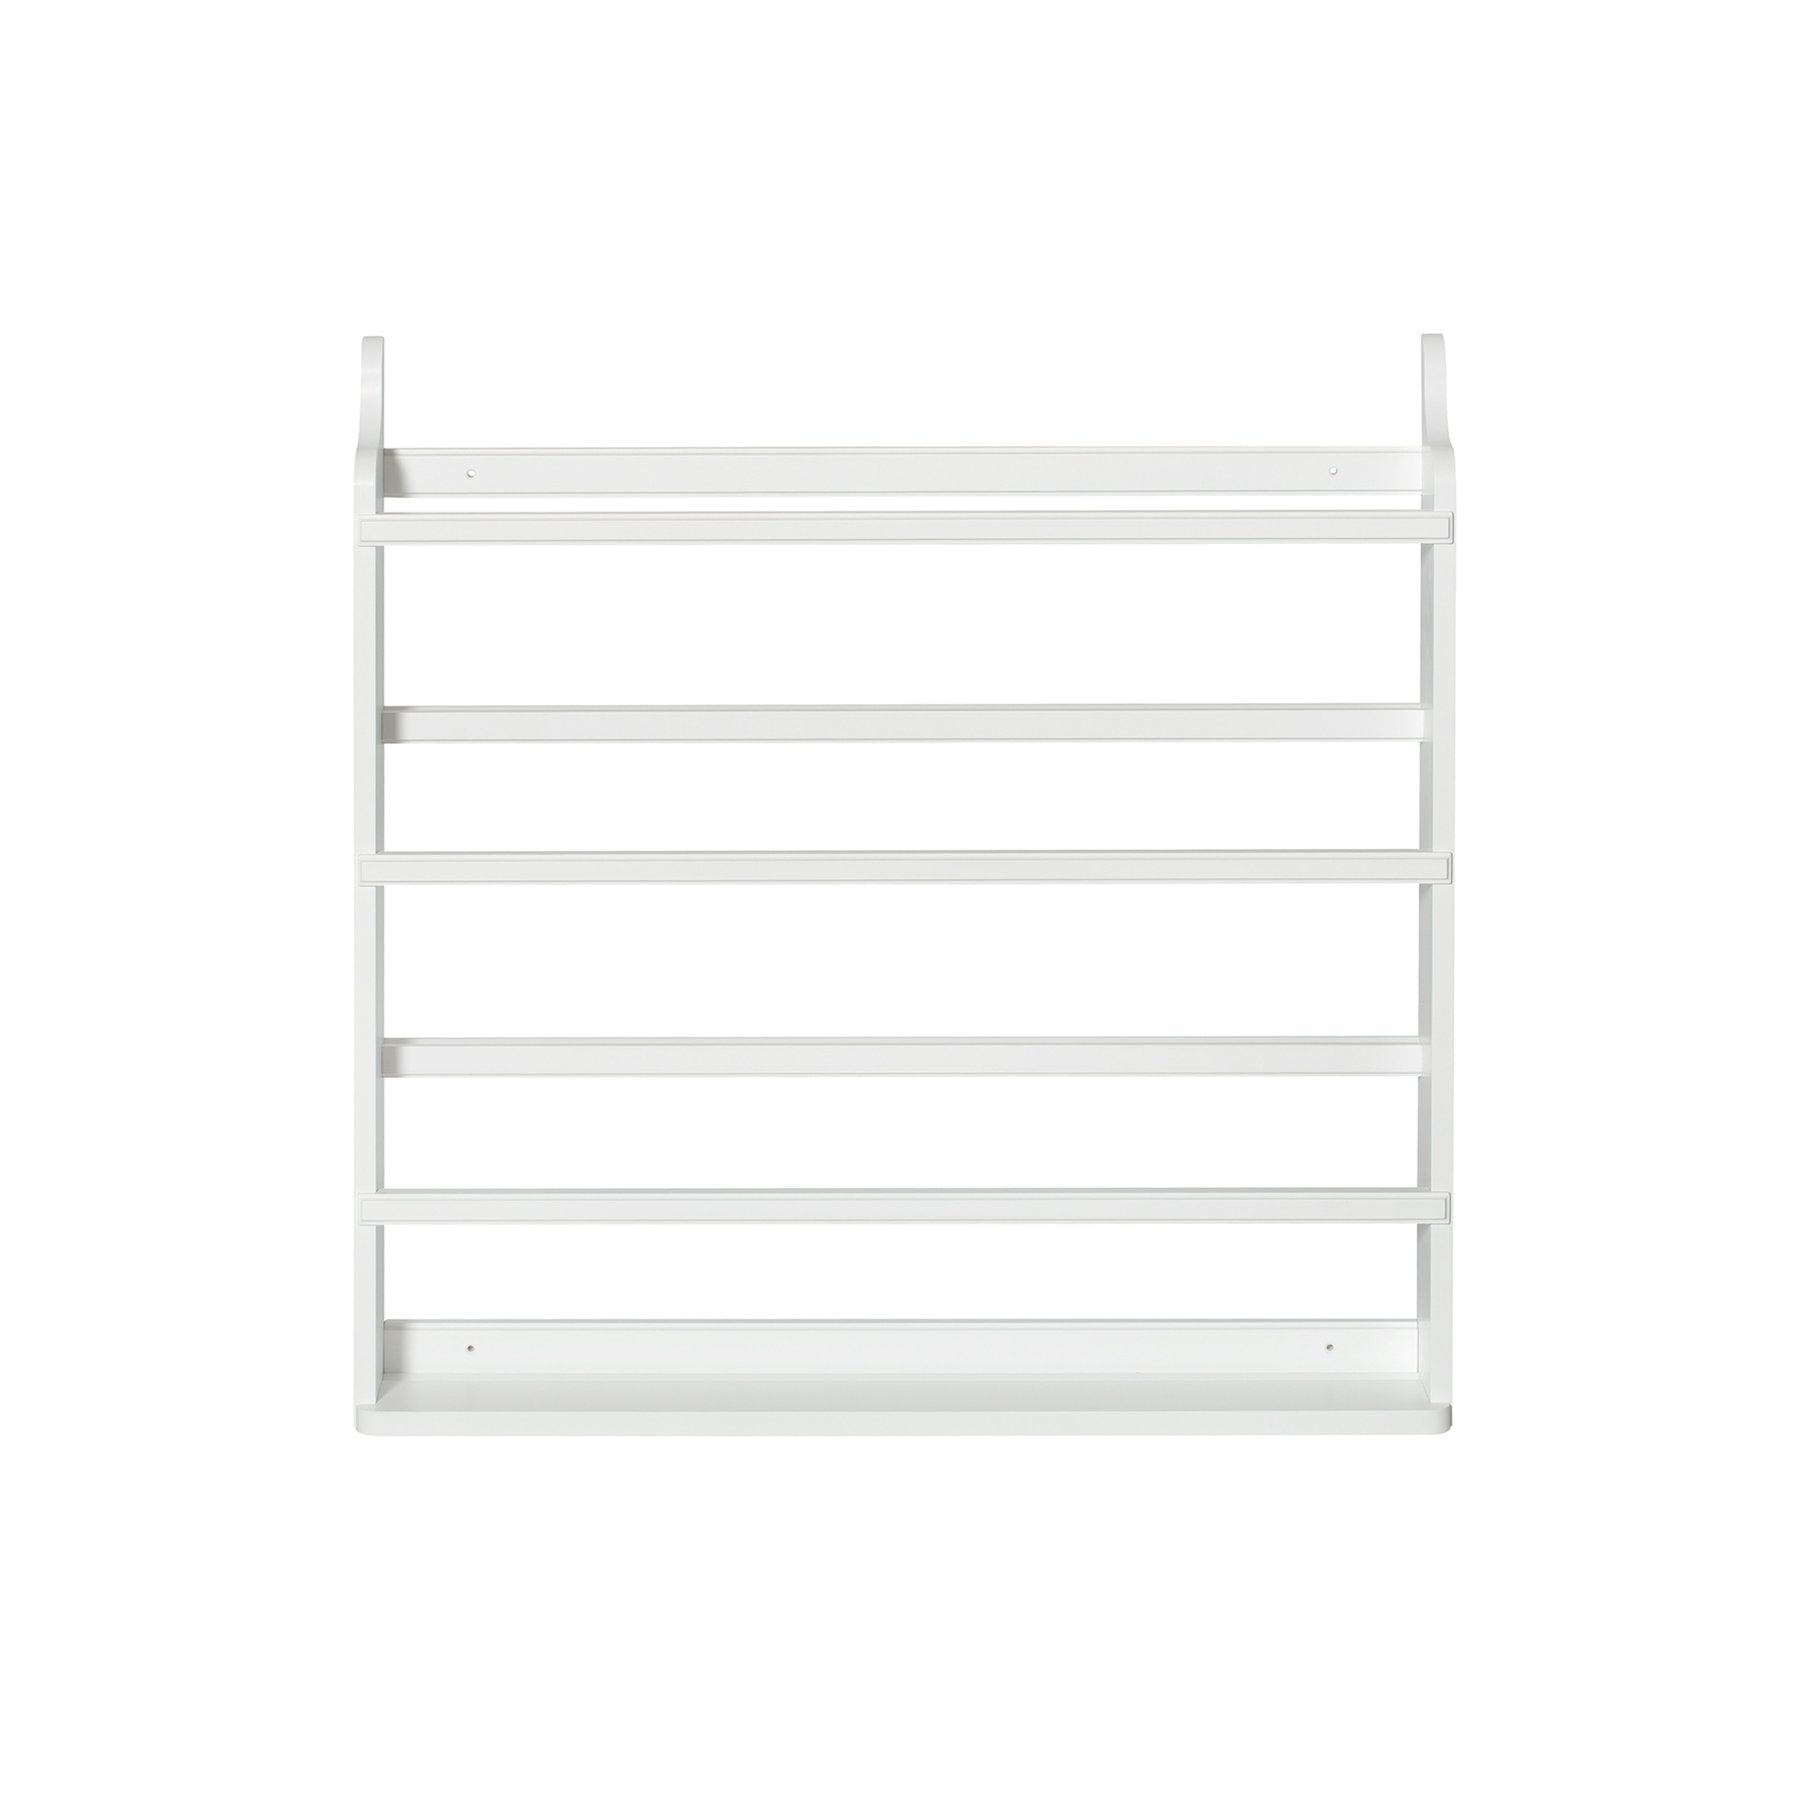 Plate Rack Shelf, 3 Levels